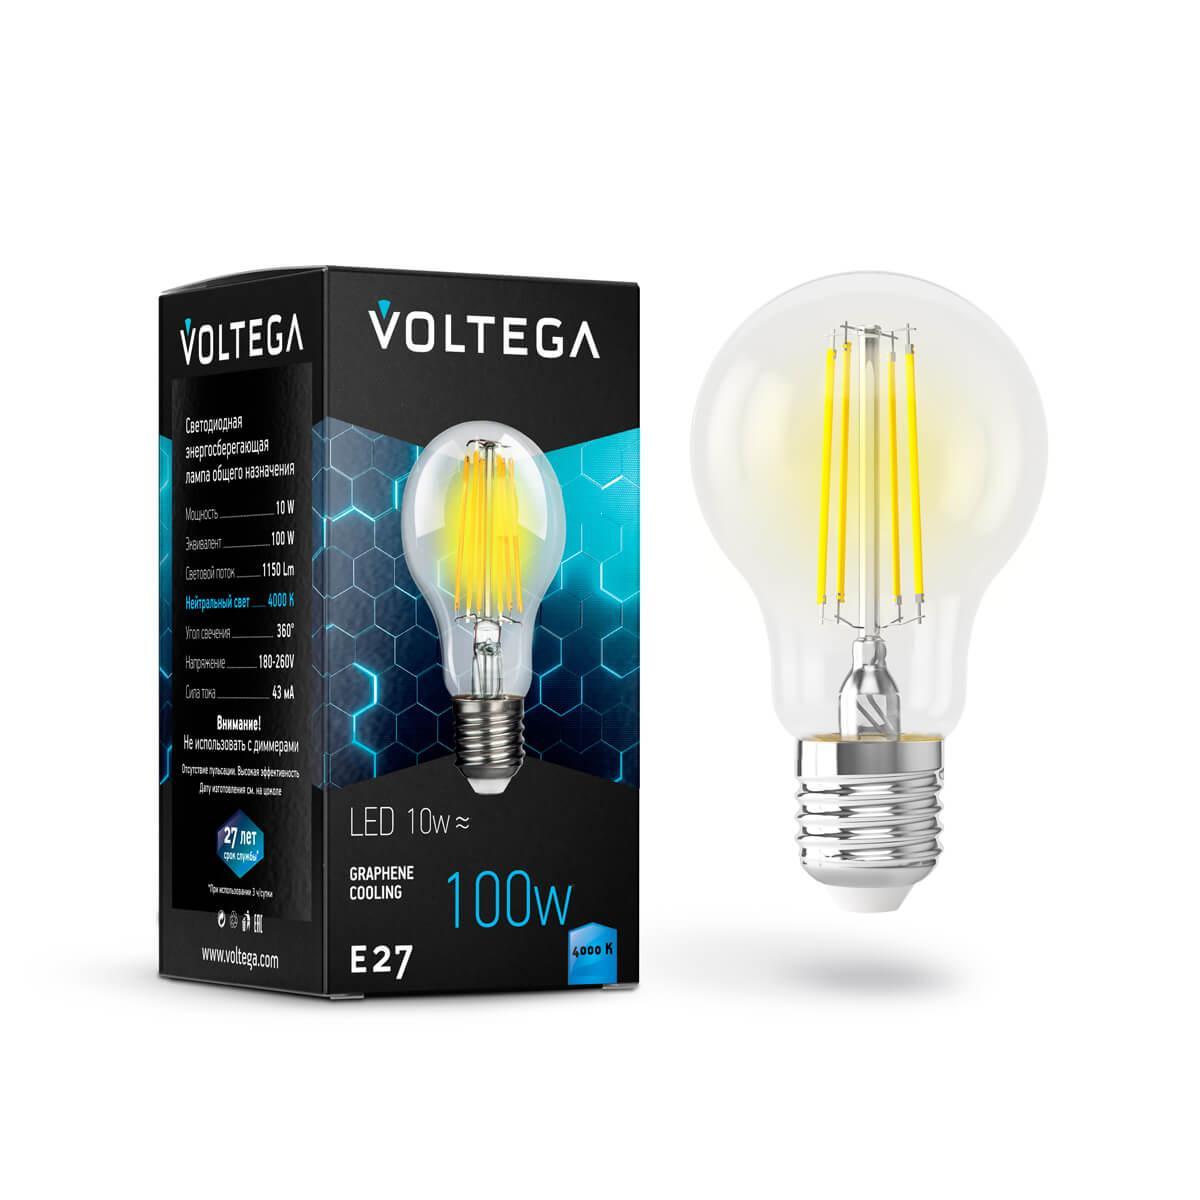    Voltega E27 10W 4000  VG10-1E27cold10W-F 7101